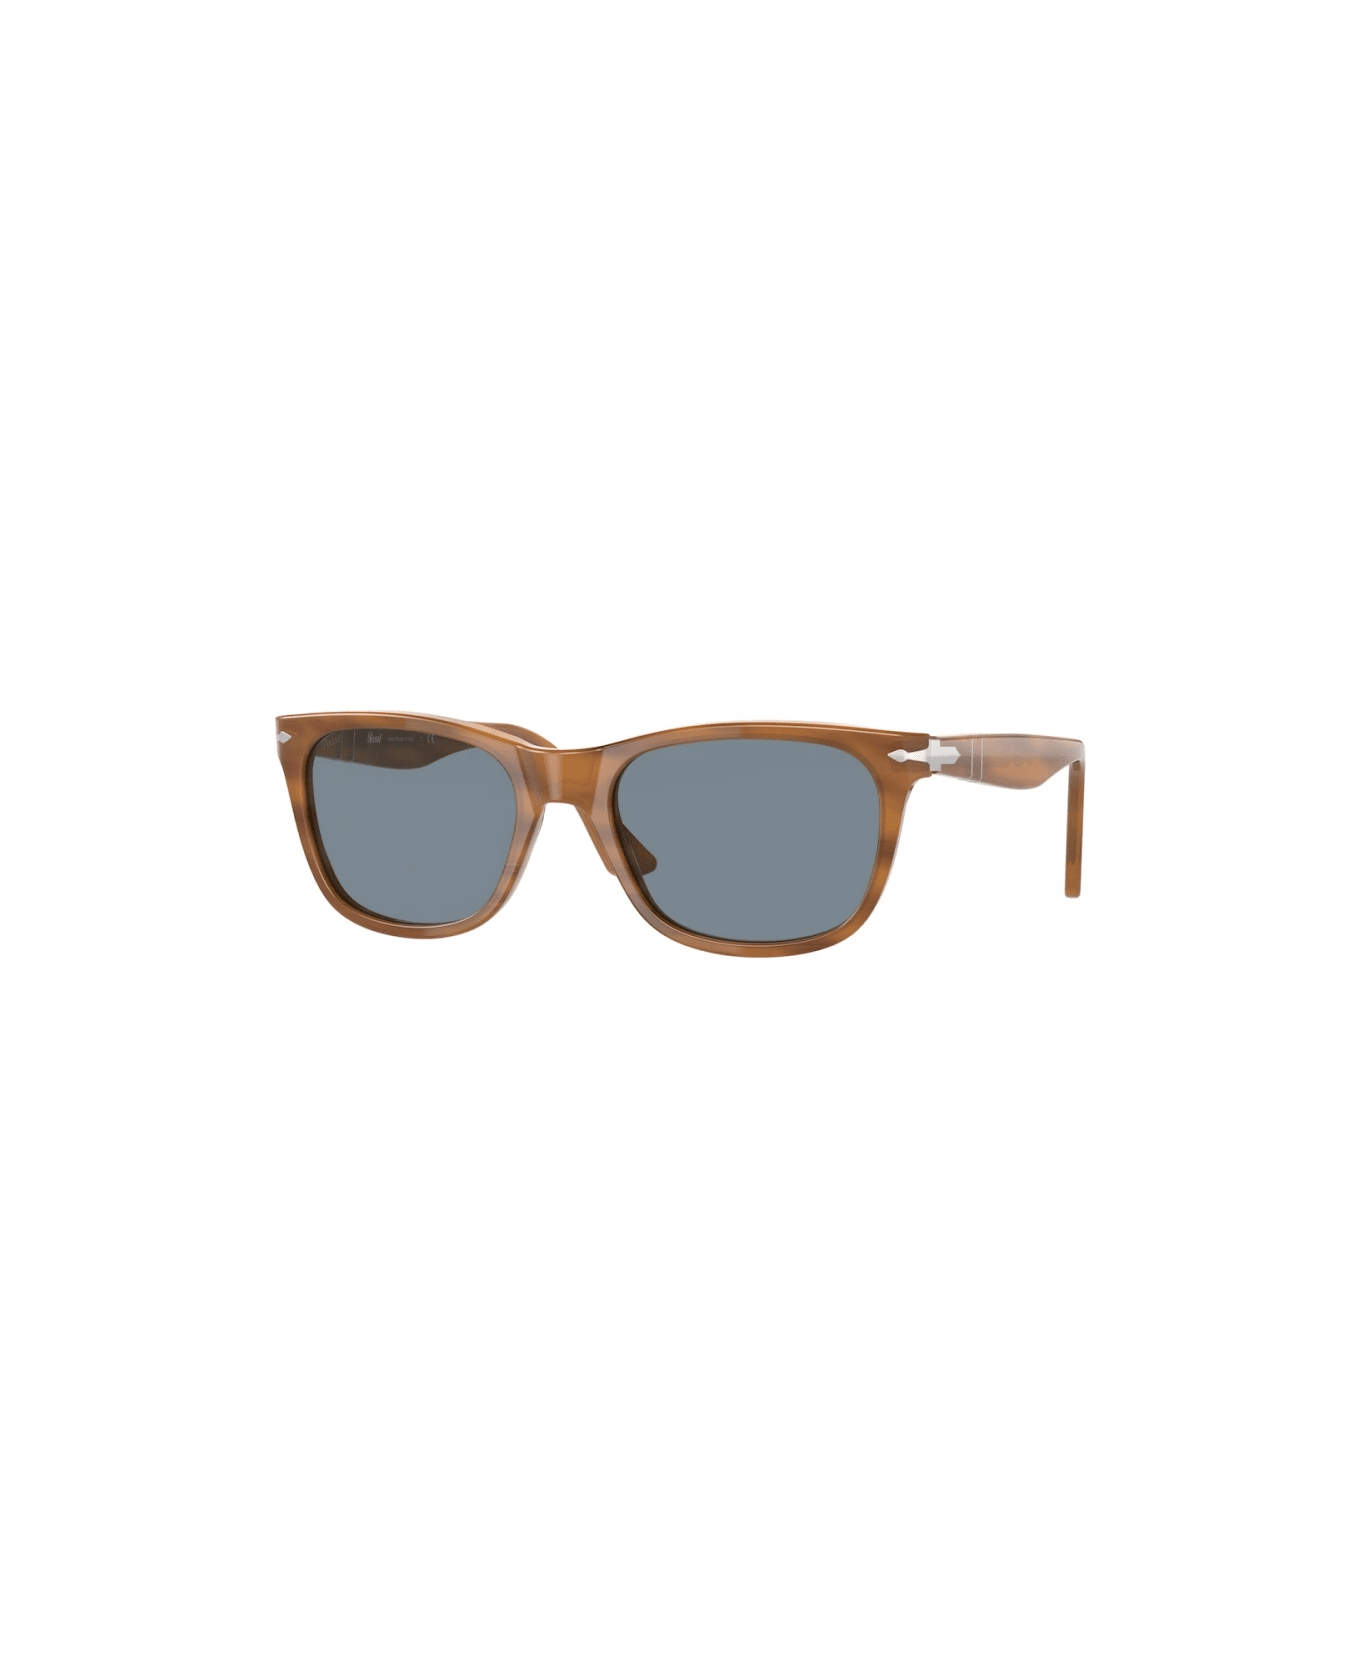 Persol po3291s 960/56 Sunglasses - Tartarugato chiaro